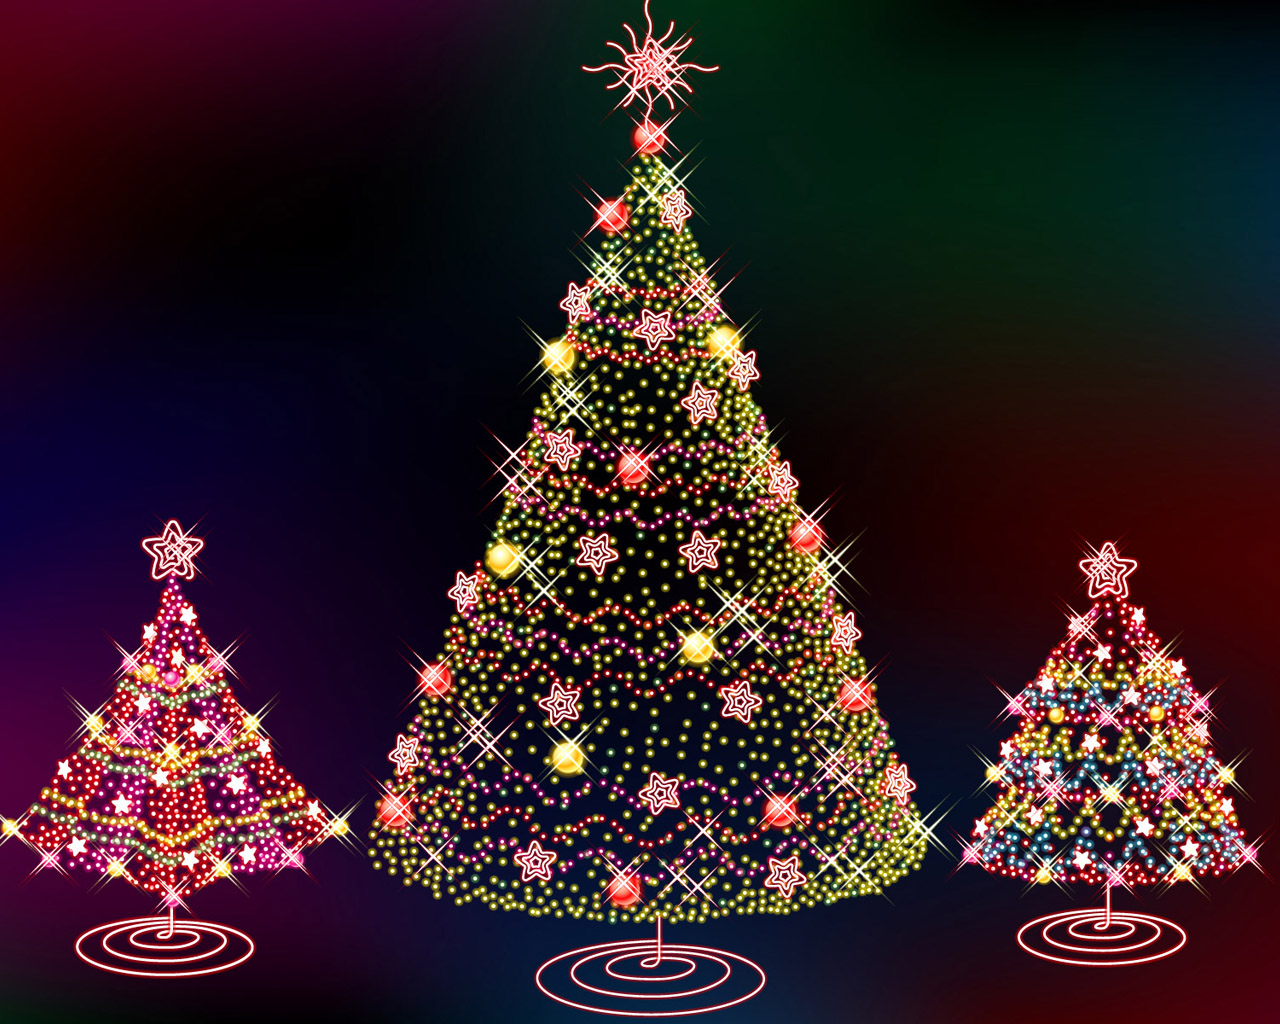 http://1.bp.blogspot.com/-zk1QsolqE0c/TvRvmxlZWWI/AAAAAAAABxc/kzPFQ1xjorU/s1600/christmas+tree+wallpaper8.jpg